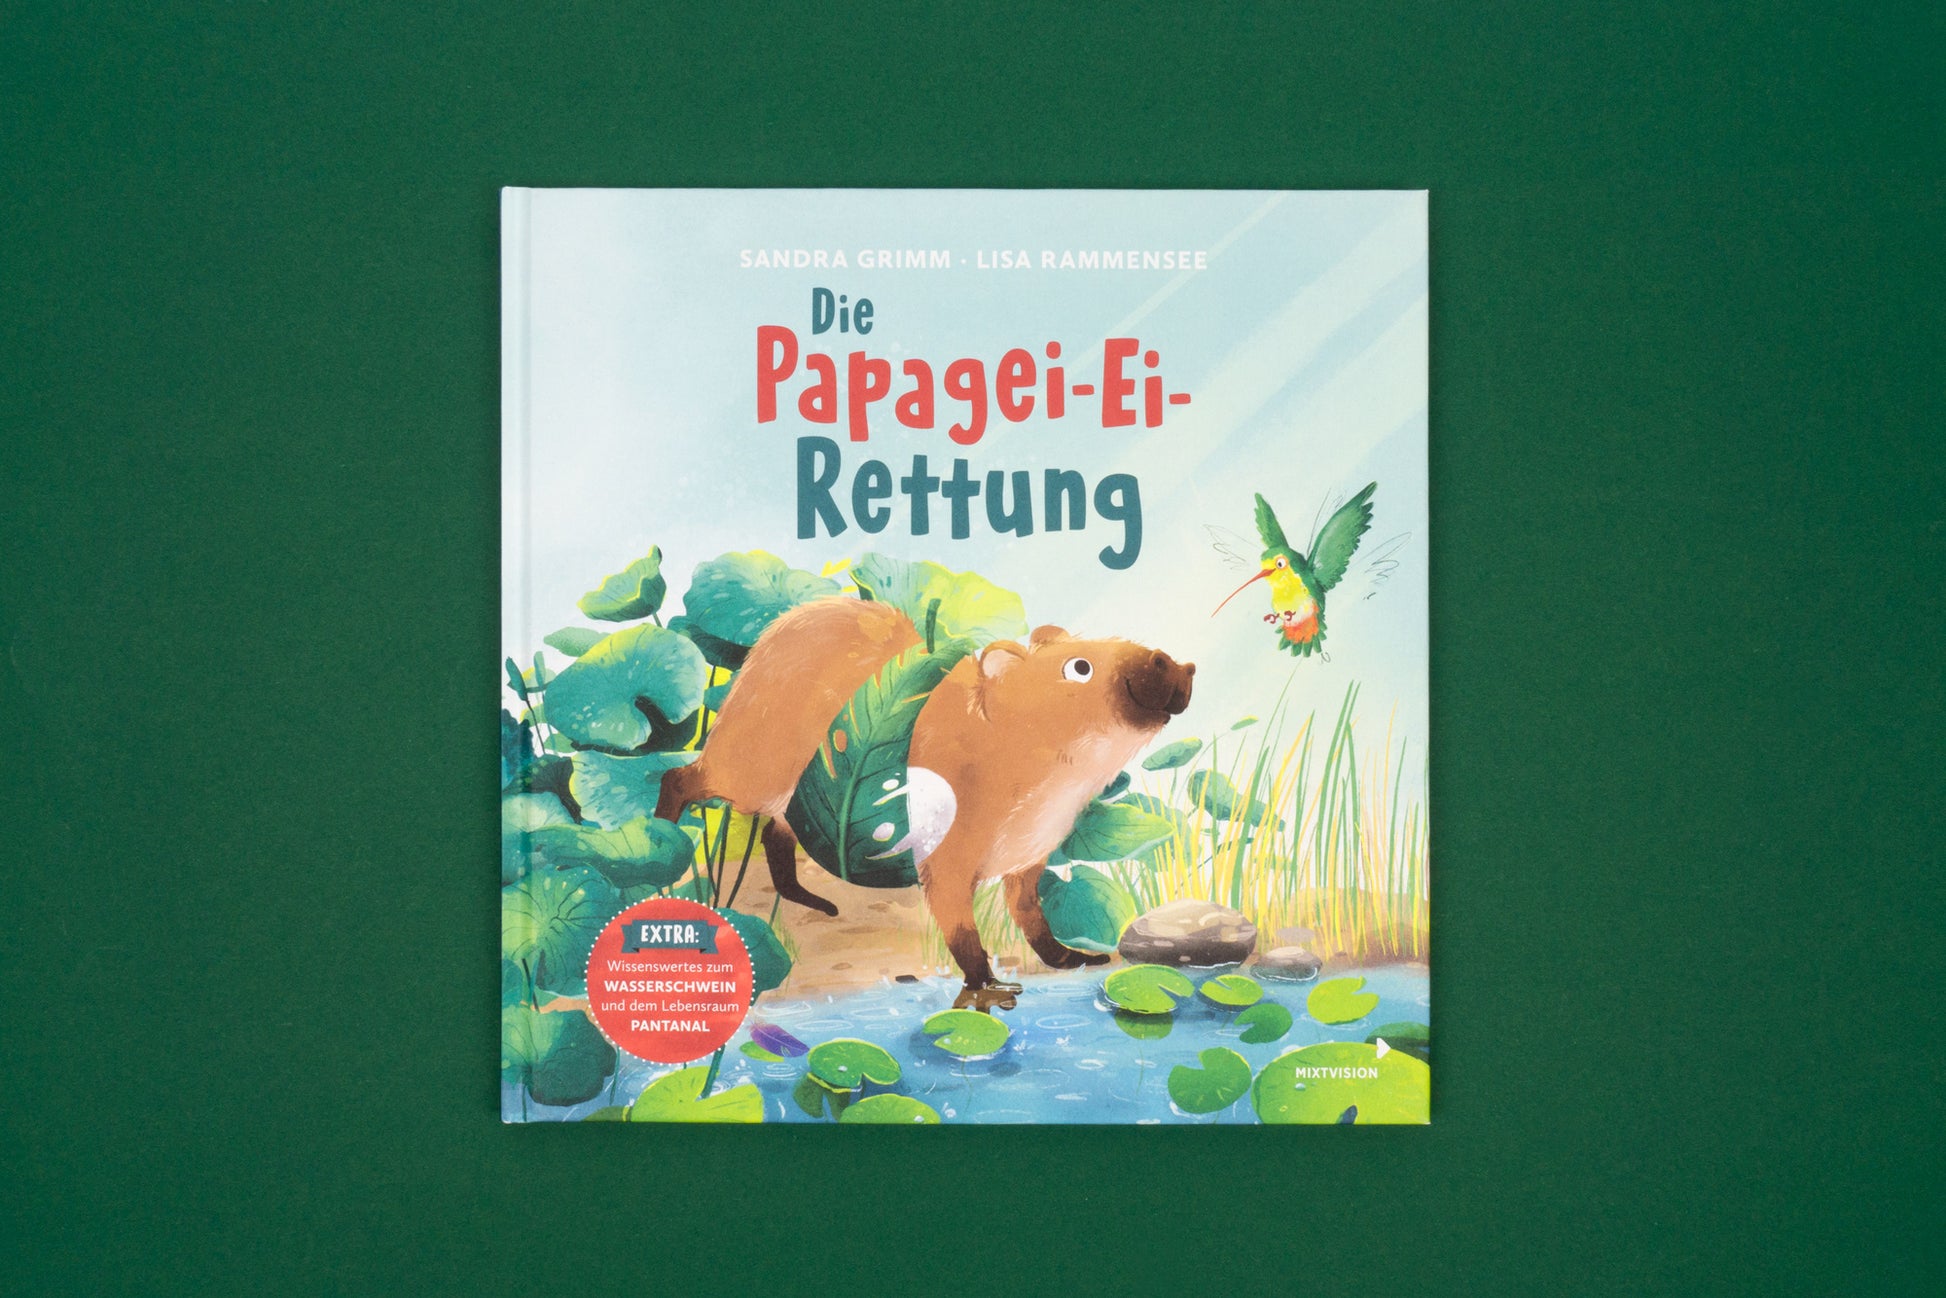 Die Papagei-Ei-Rettung 978-3-95854-180-1 Buch-Cover